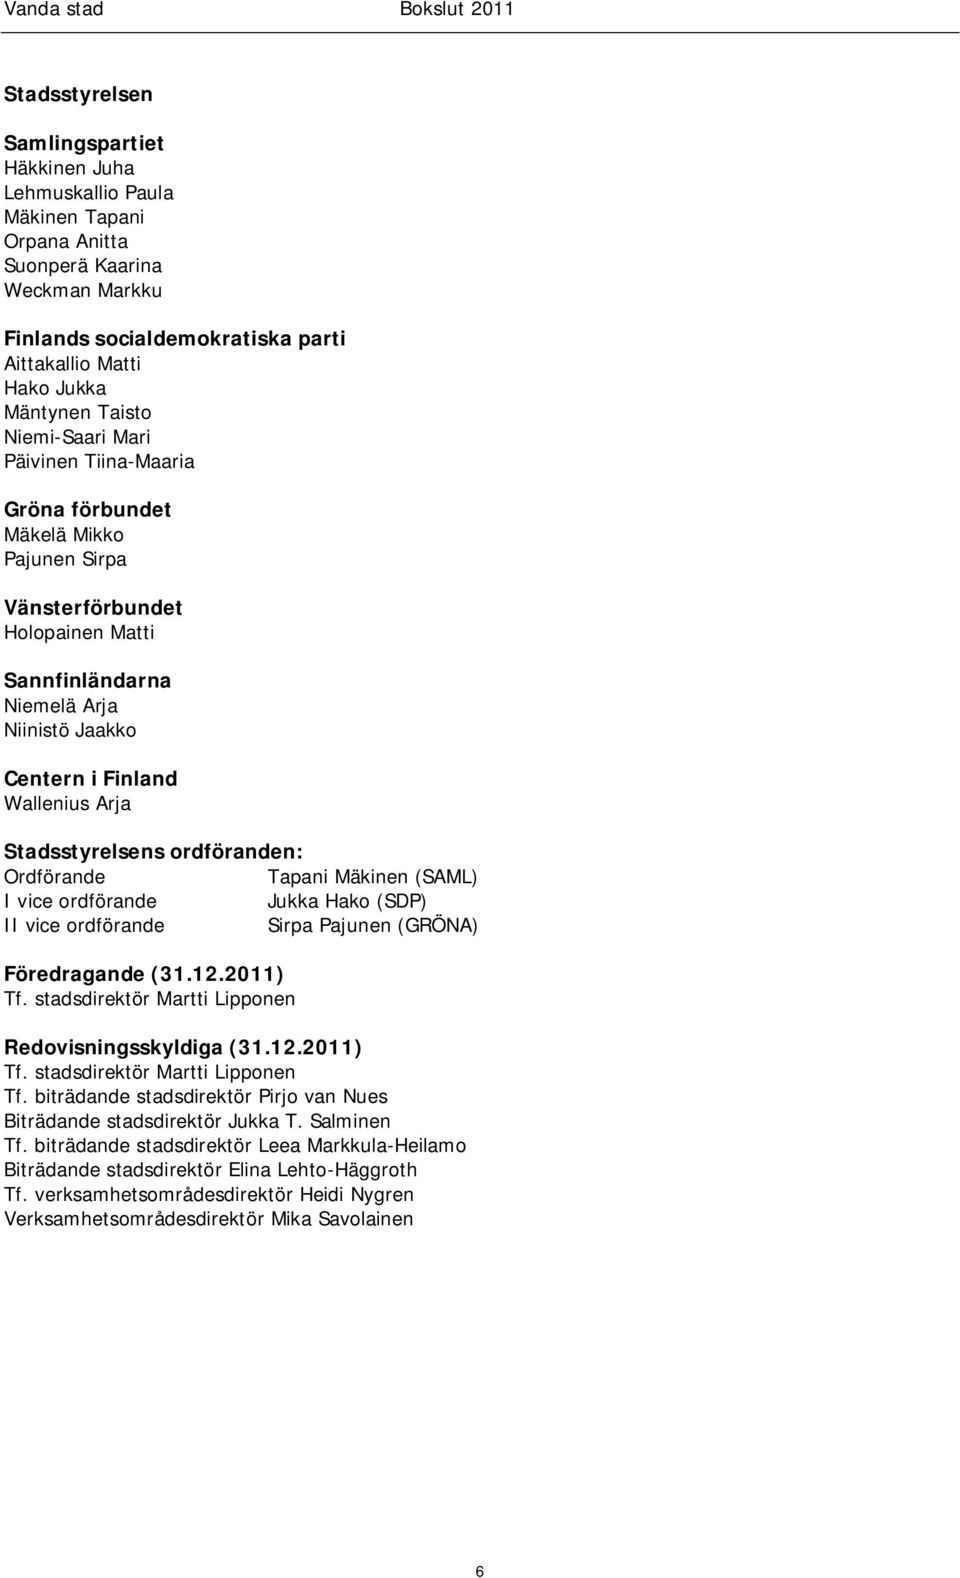 Arja Stadsstyrelsens ordföranden: Ordförande Tapani Mäkinen (SAML) I vice ordförande Jukka Hako (SDP) II vice ordförande Sirpa Pajunen (GRÖNA) Föredragande (31.12.2011) Tf.